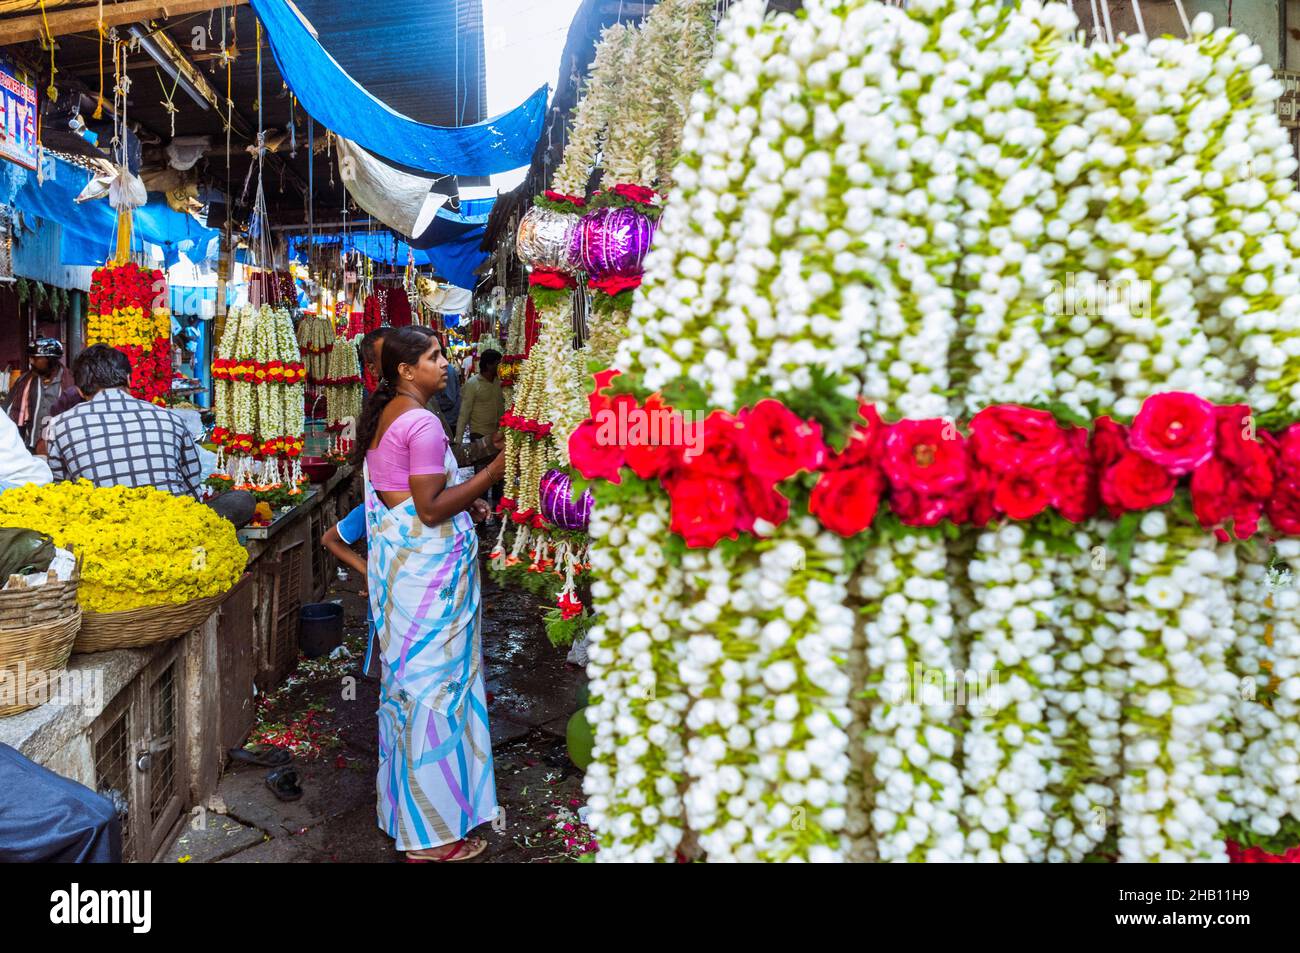 Mysore, Karnataka, Inde : Une femme fait des magasins de guirlandes de fleurs au marché de Devaraja. Banque D'Images